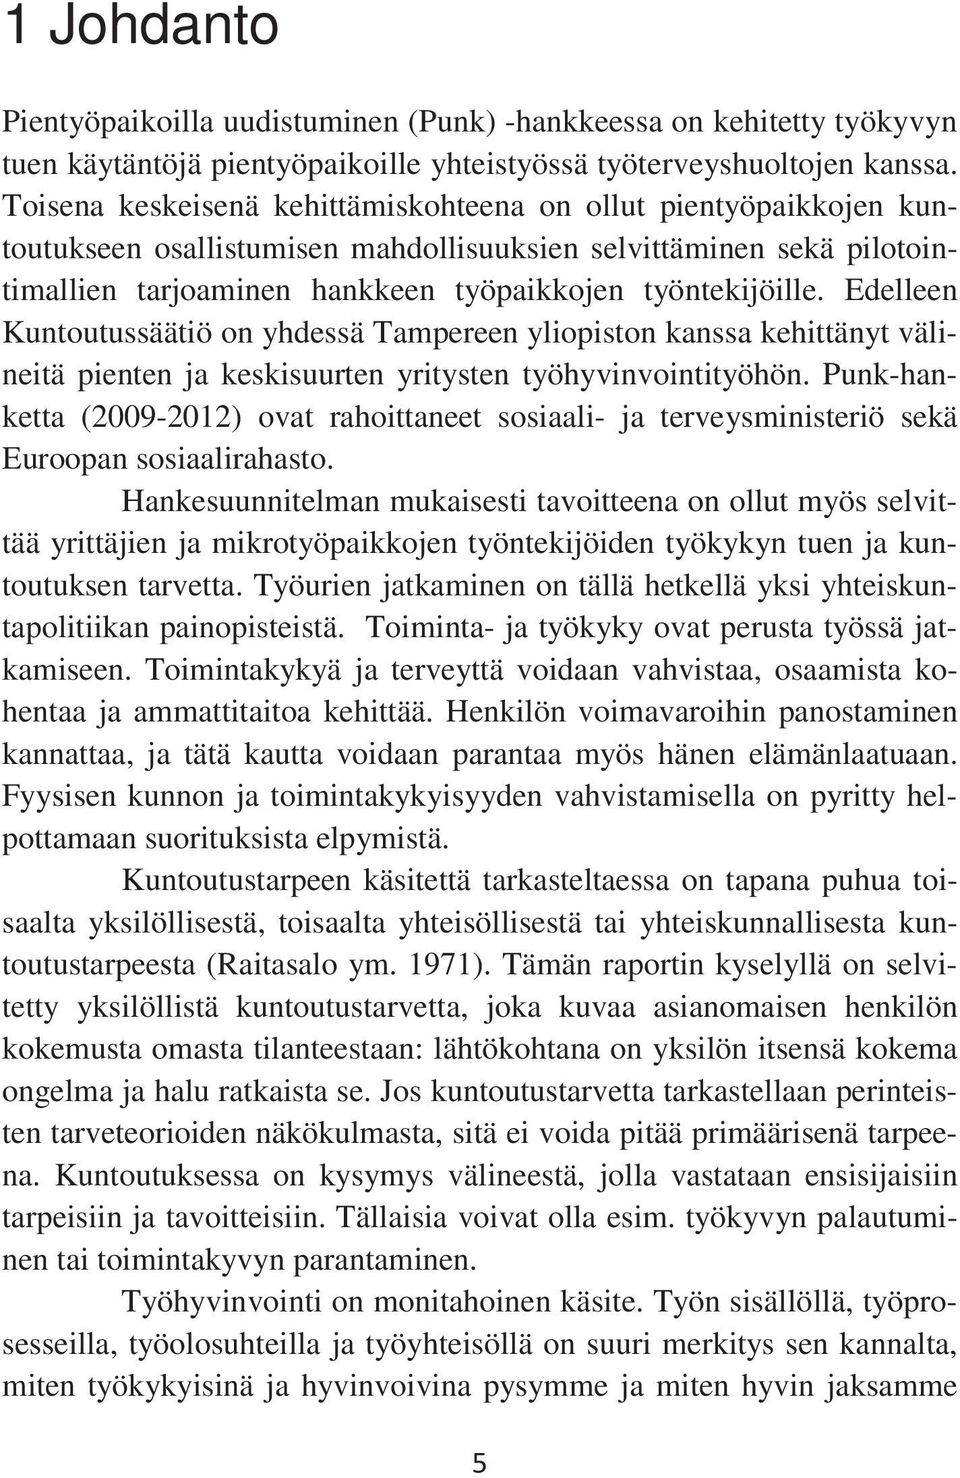 Edelleen Kuntoutussäätiö on yhdessä Tampereen yliopiston kanssa kehittänyt välineitä pienten ja keskisuurten yritysten työhyvinvointityöhön.